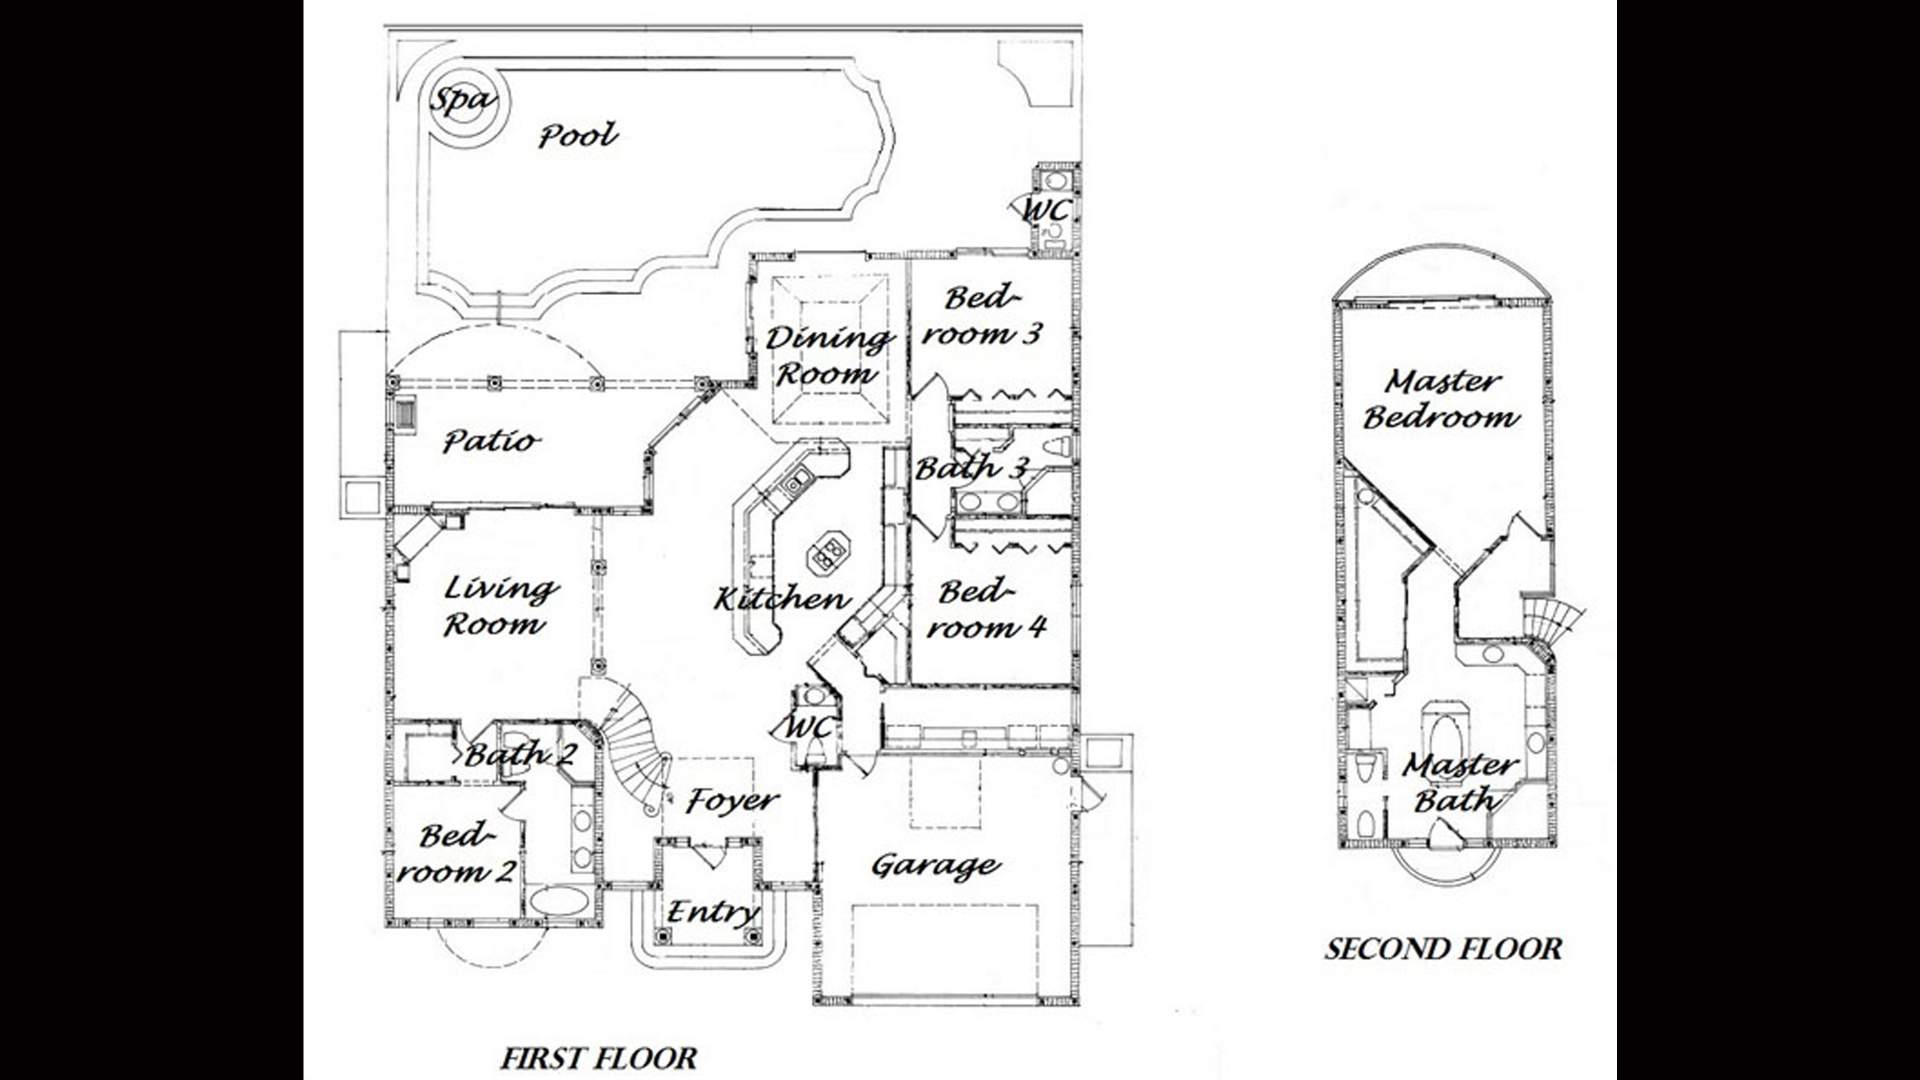 Floorplan first floor Villa First Class